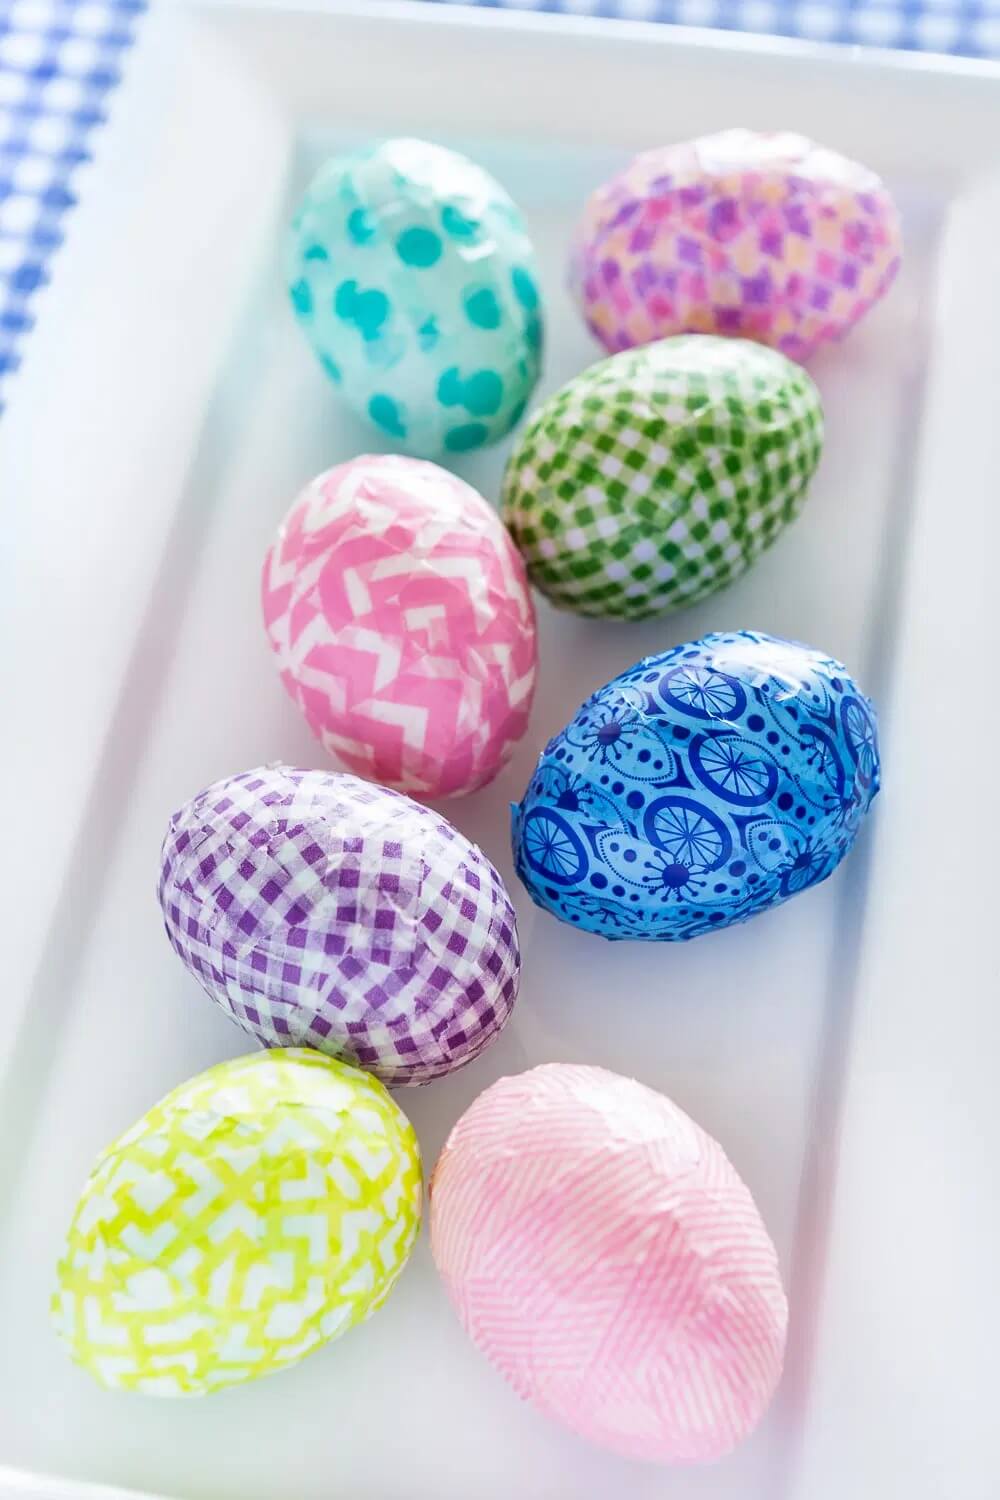 Easter egg decoration craft using washi tape